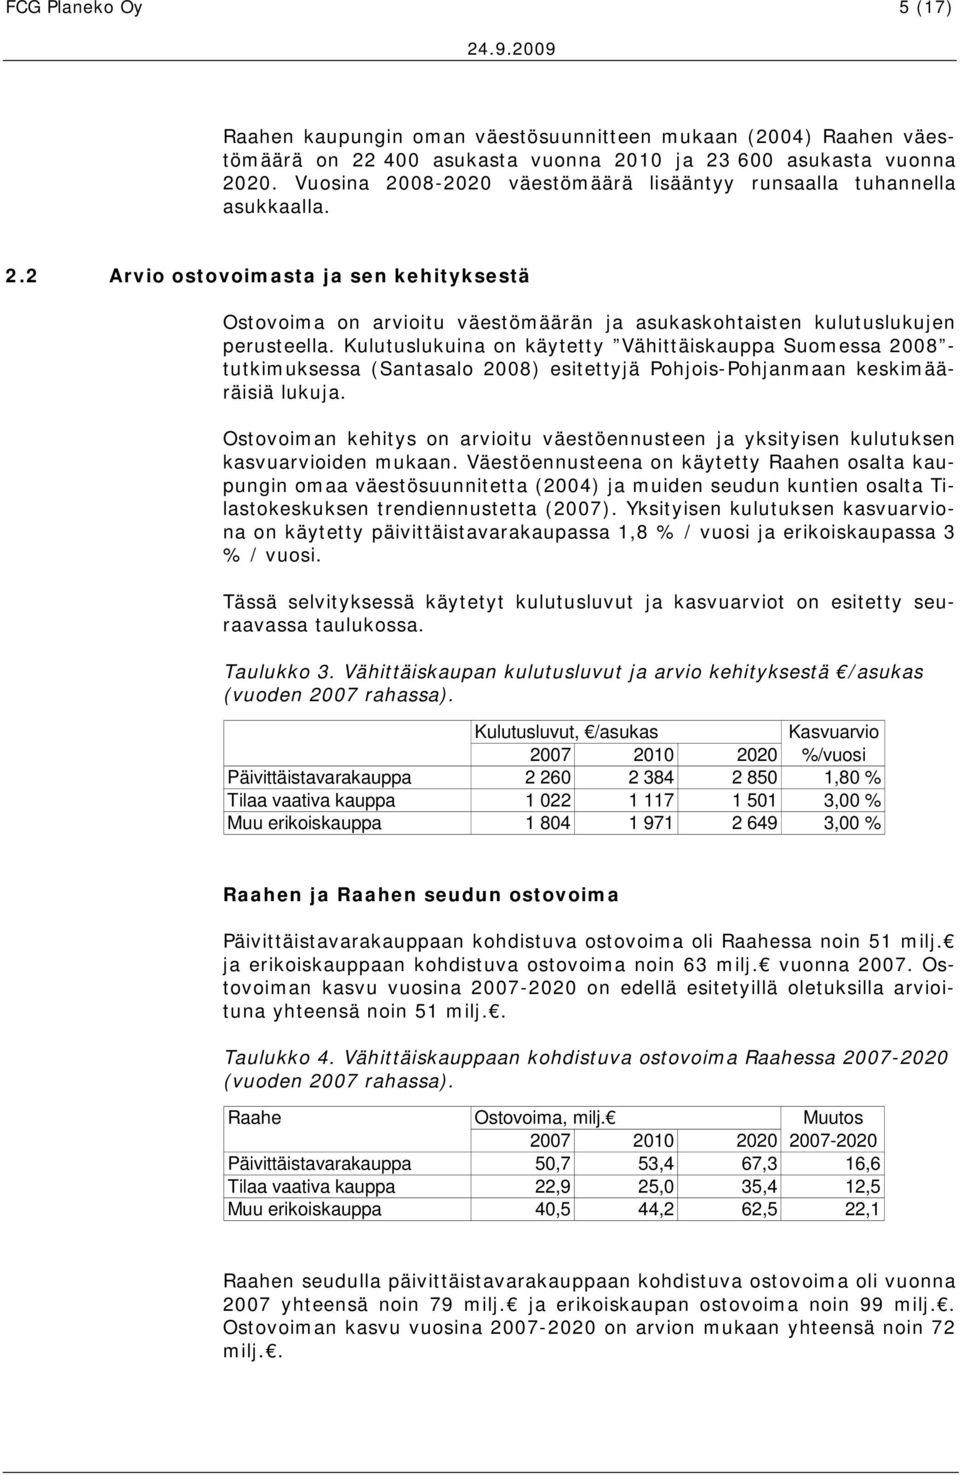 Kulutuslukuina on käytetty Vähittäiskauppa Suomessa 2008 - tutkimuksessa (Santasalo 2008) esitettyjä Pohjois-Pohjanmaan keskimääräisiä lukuja.